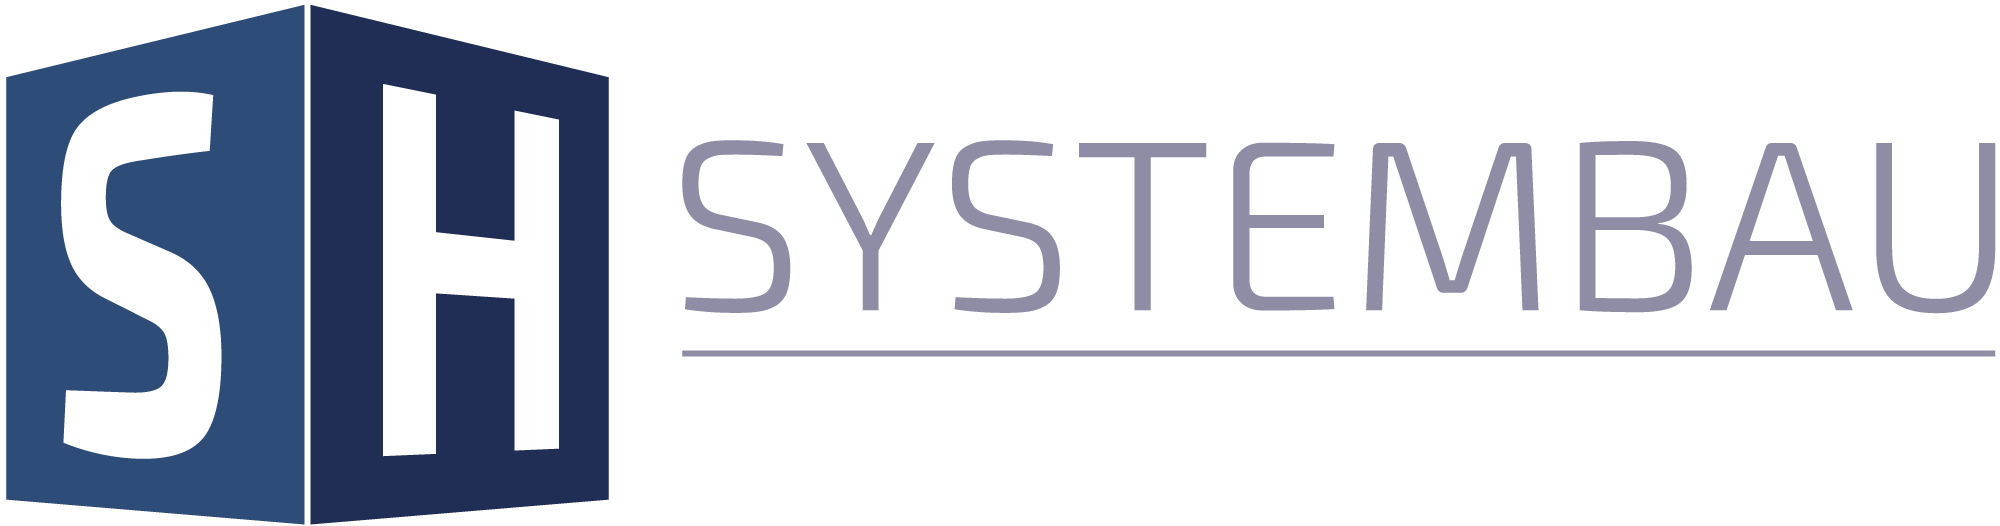 SH Systembau